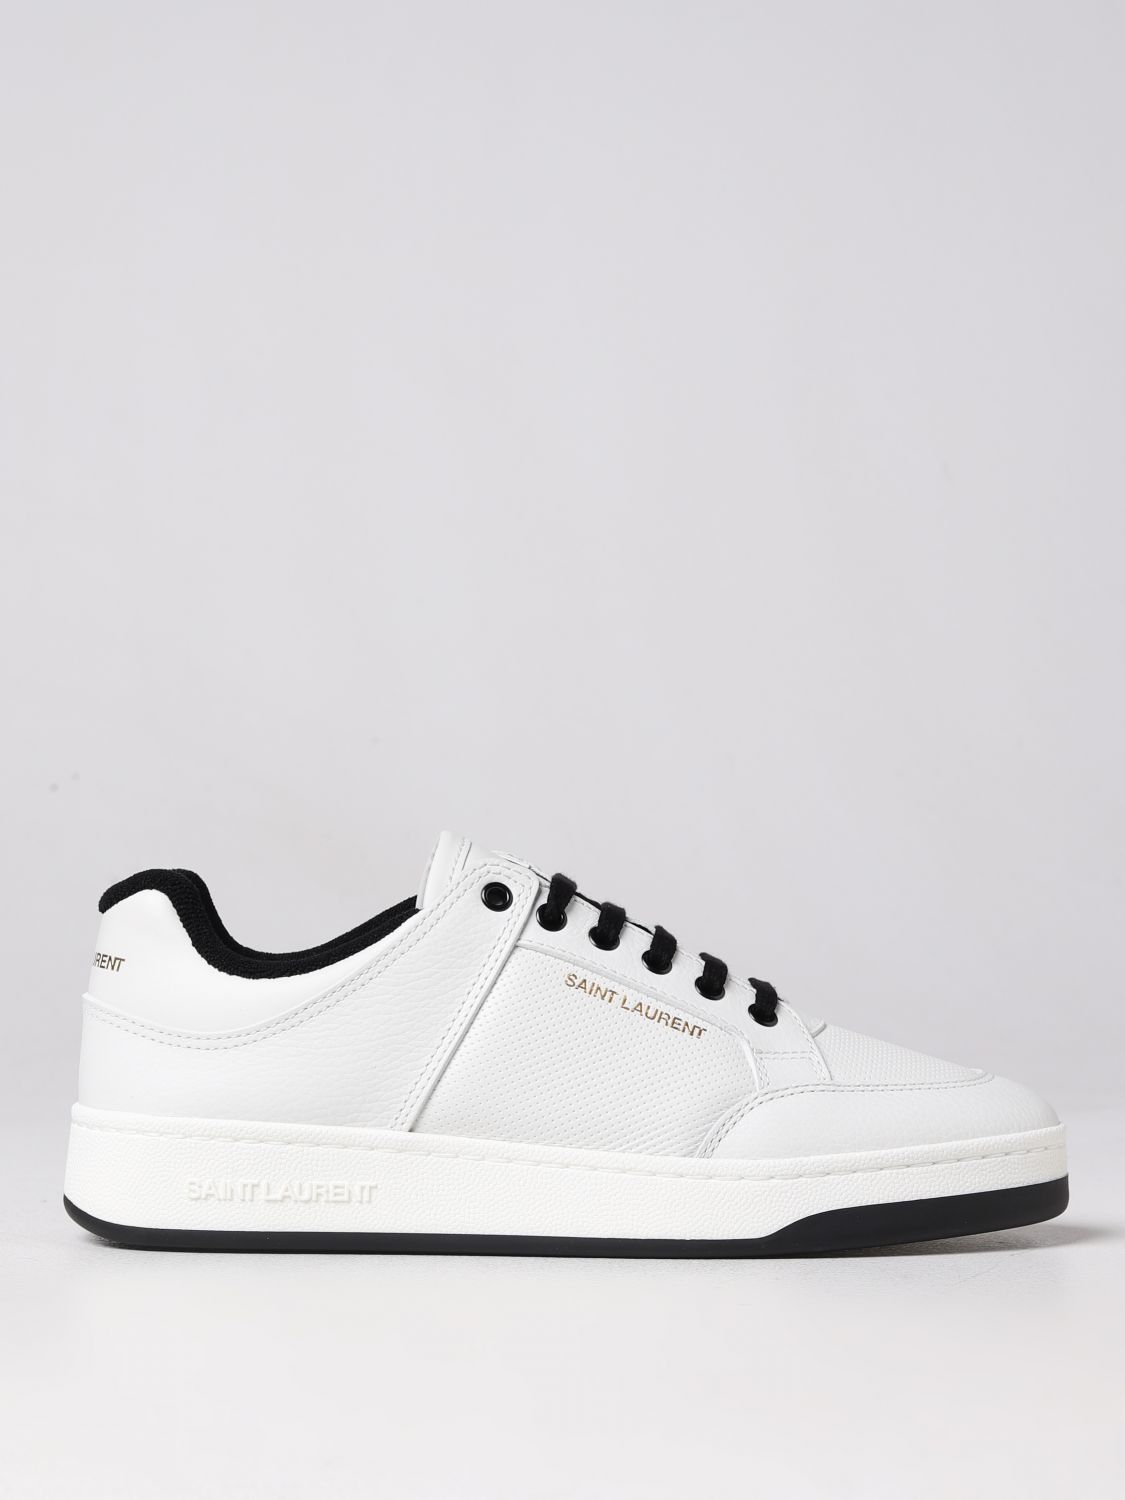 Virus Privilegiat ambiţie  SAINT LAURENT: sneakers for man - White | Saint Laurent sneakers  713600AAAWR online on GIGLIO.COM